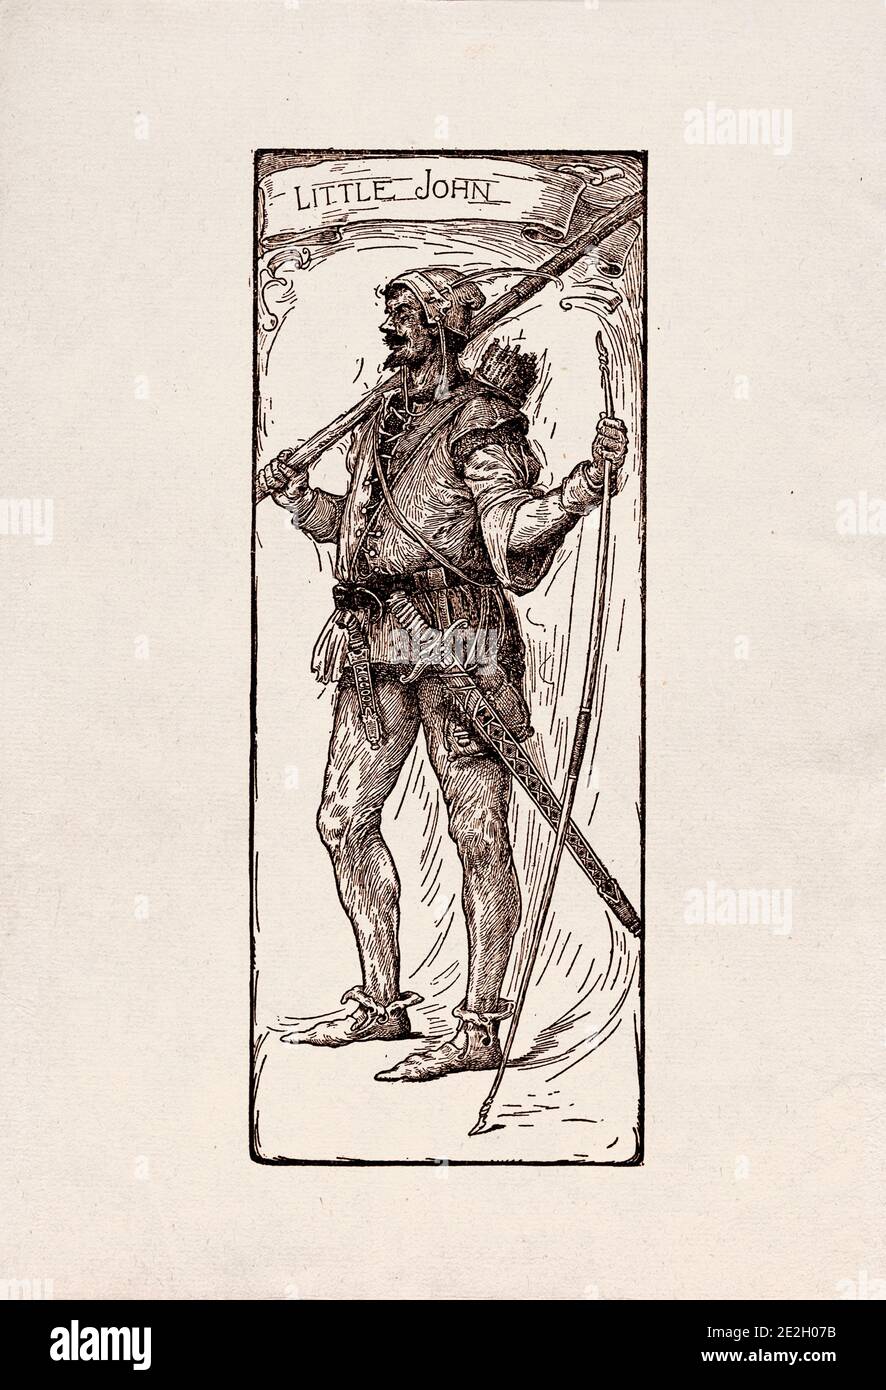 Gravure antique de personnages littéraires du folklore anglais des légendes Robin des Bois. Petit Jean. Par Louis Rhead. 1912 Banque D'Images